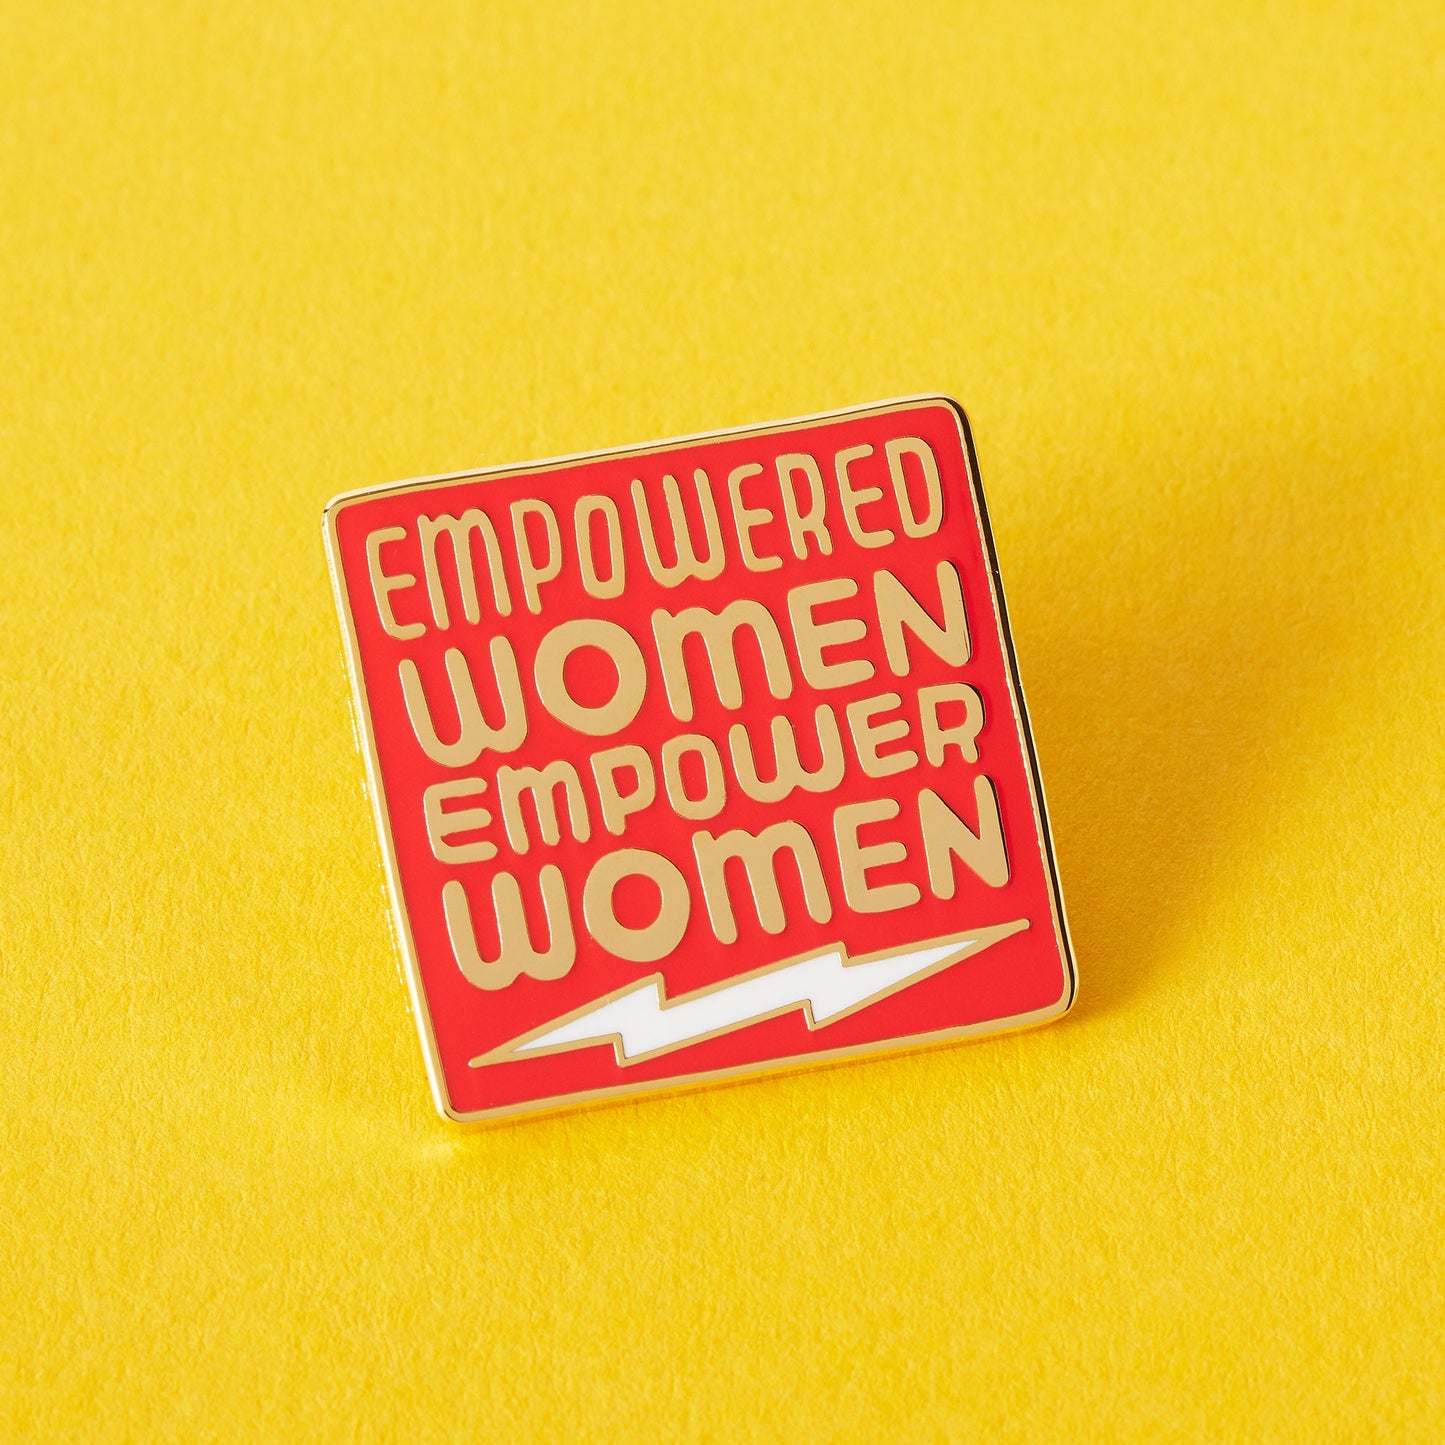 Pins - Empowered women